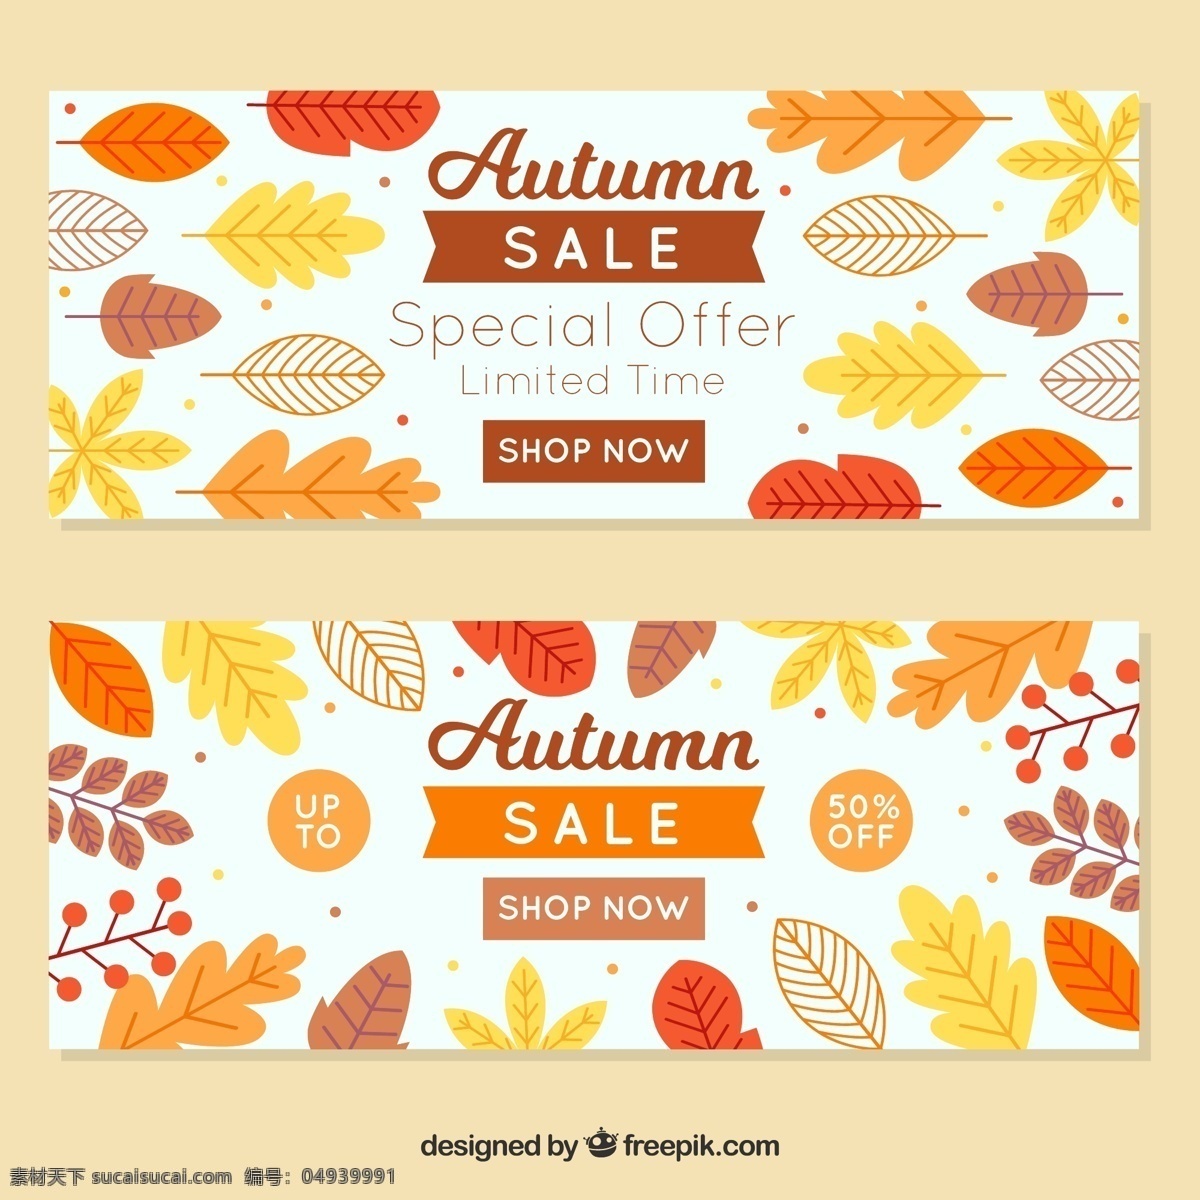 两个 可爱 秋季 促销 横幅 销售 模板 树叶 自然 购物 森林 秋天 折扣 价格 提供 商店 树木 颜色